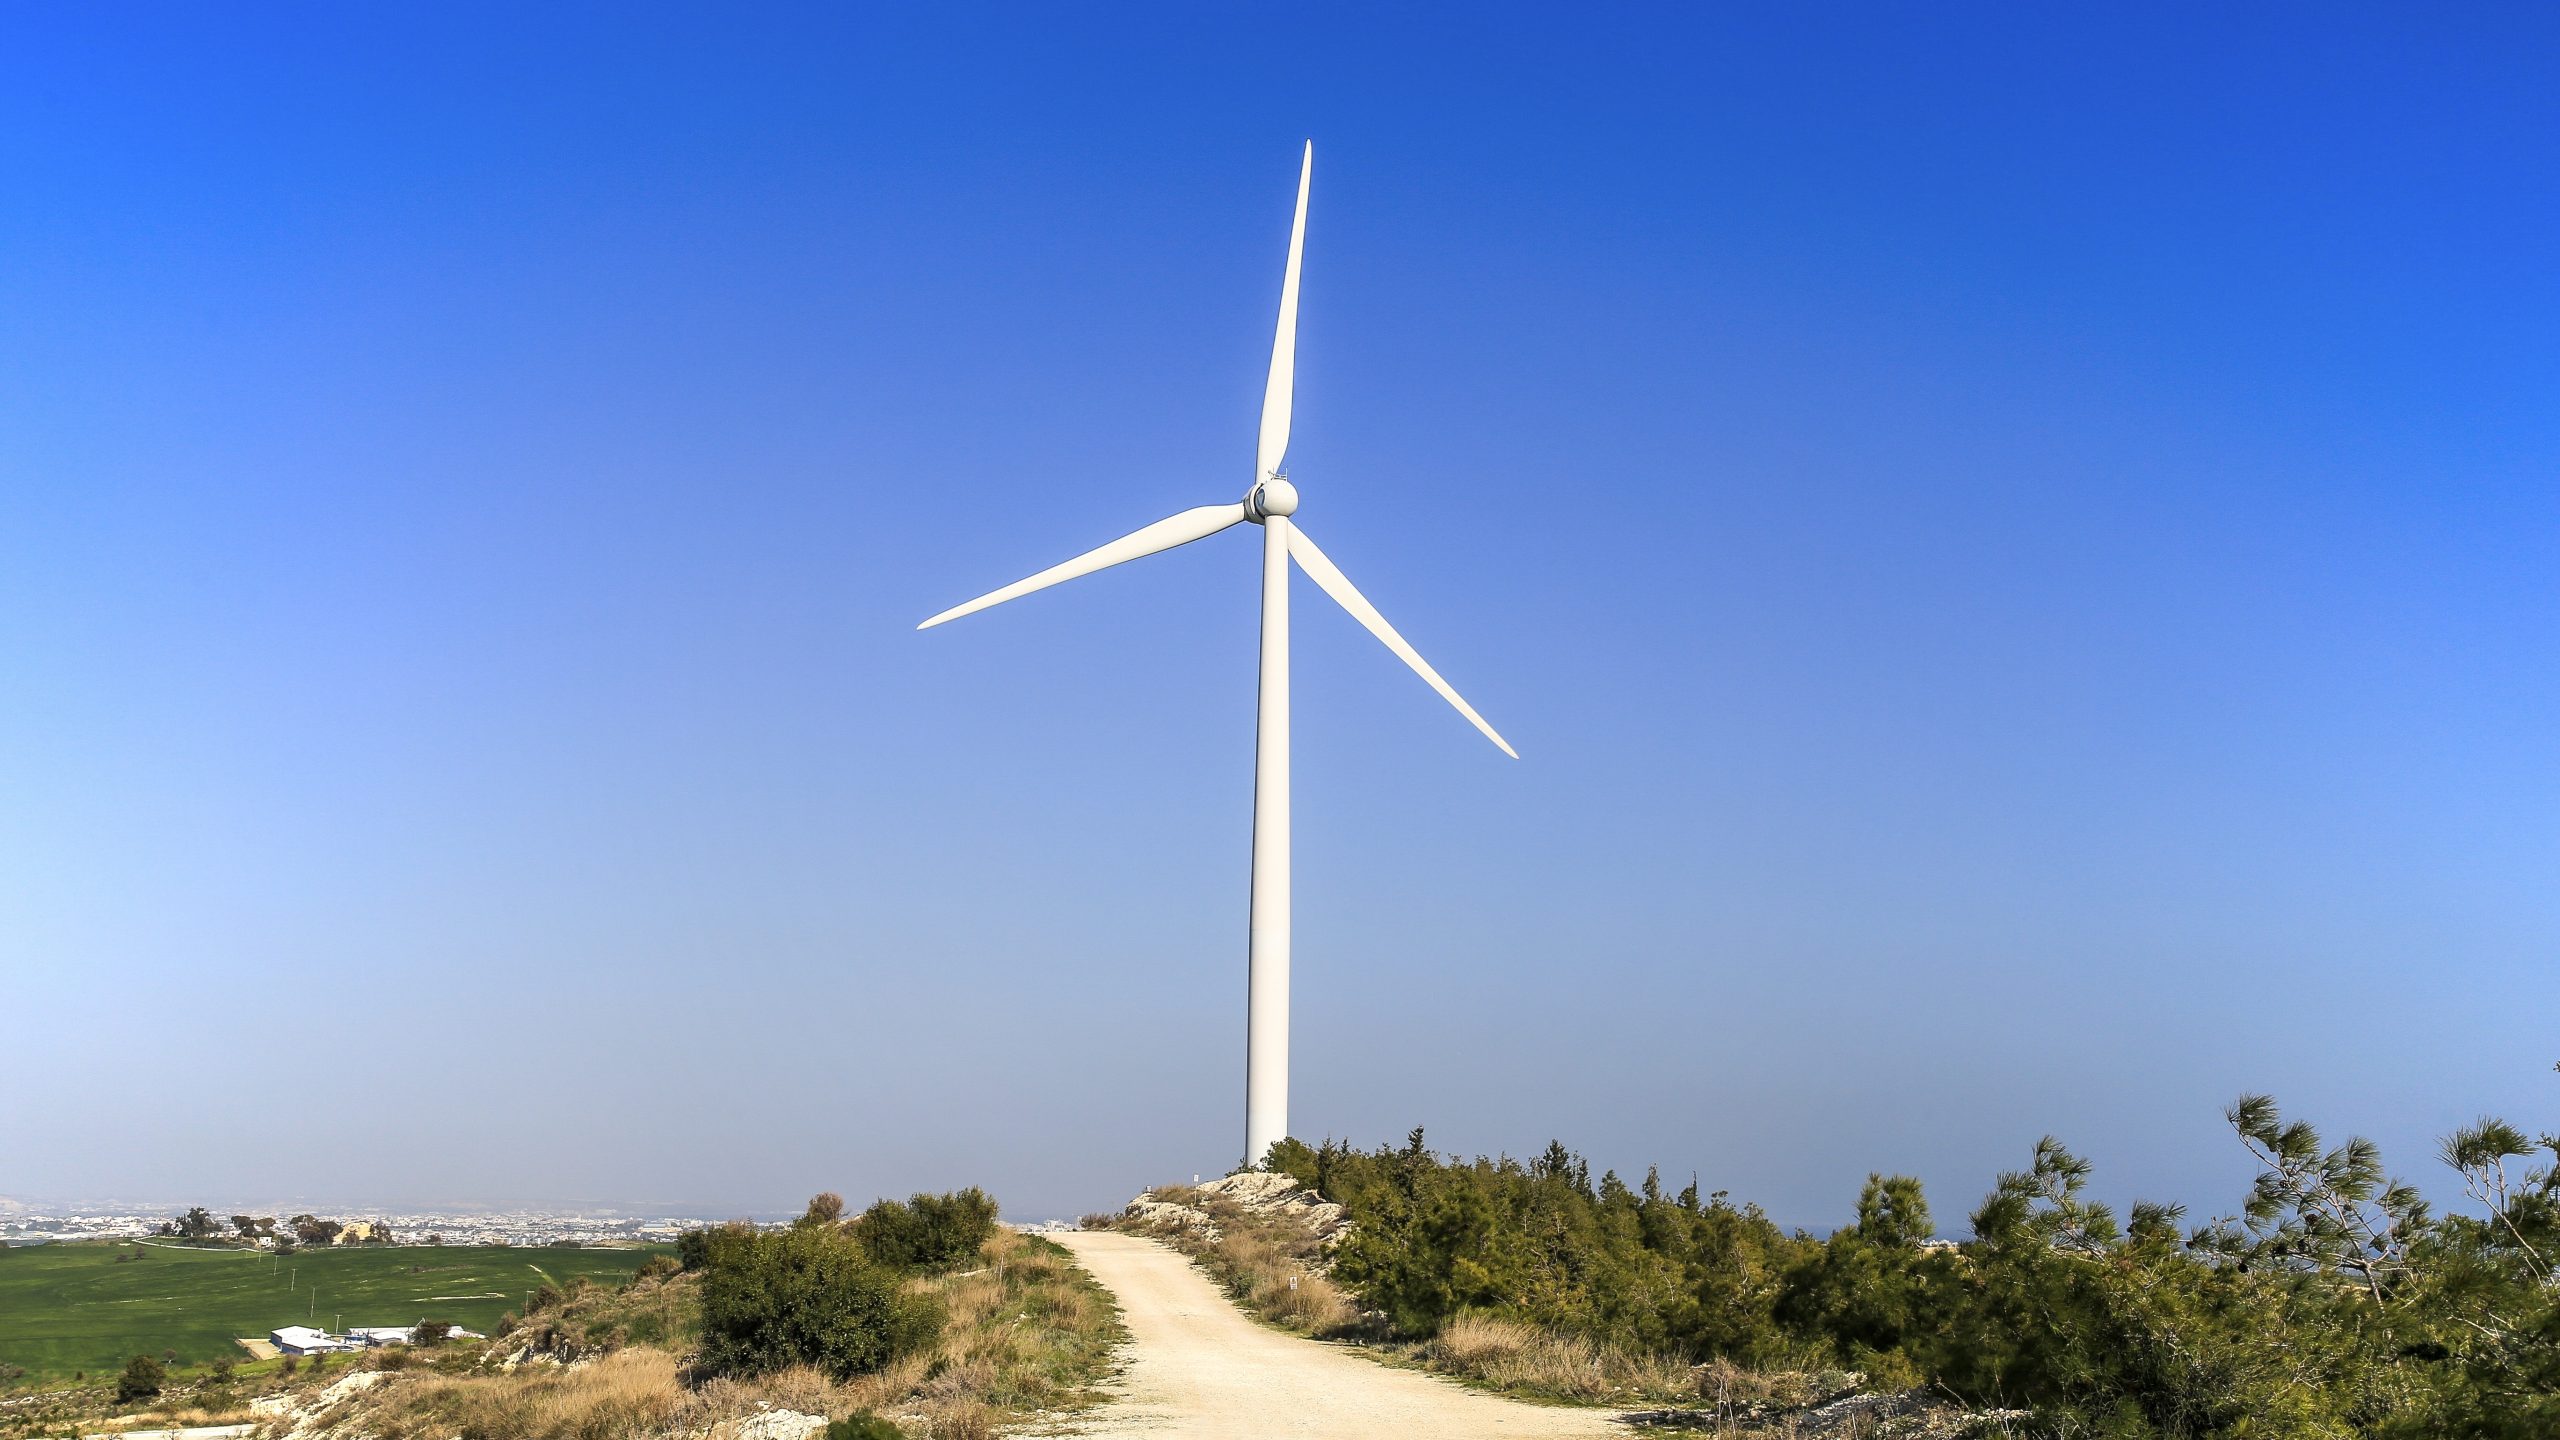 Πώς εξελίχθηκε η εκμετάλλευση των Ανανεώσιμων Πηγών Ενέργειας στην Ελλάδα